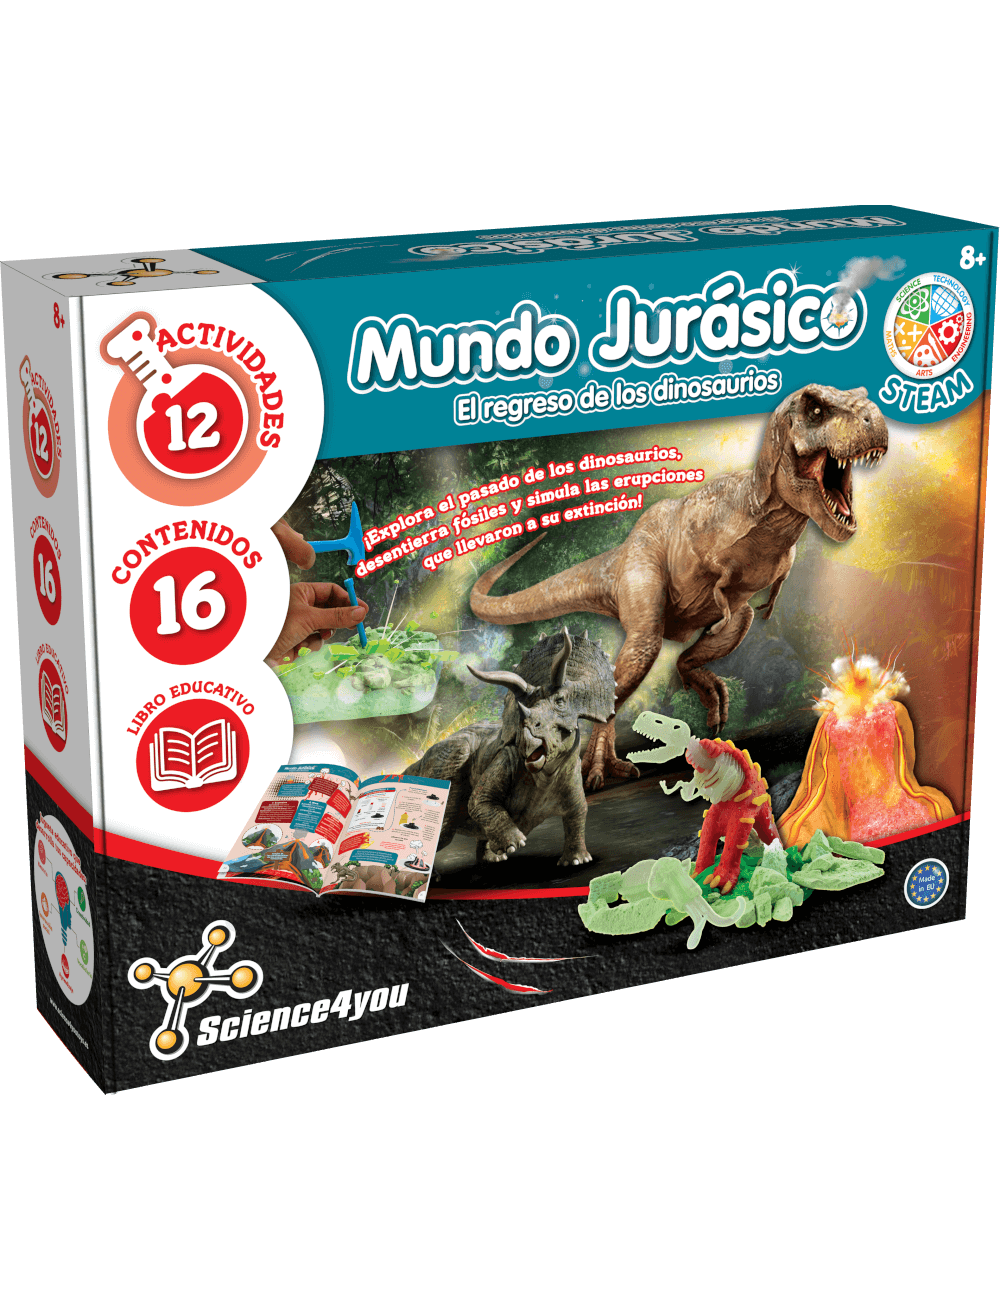 Mundo Jurasico El Regreso De Los Dinosaurios Juguete Educativo Y Cientifíco Para Niños 8 3276